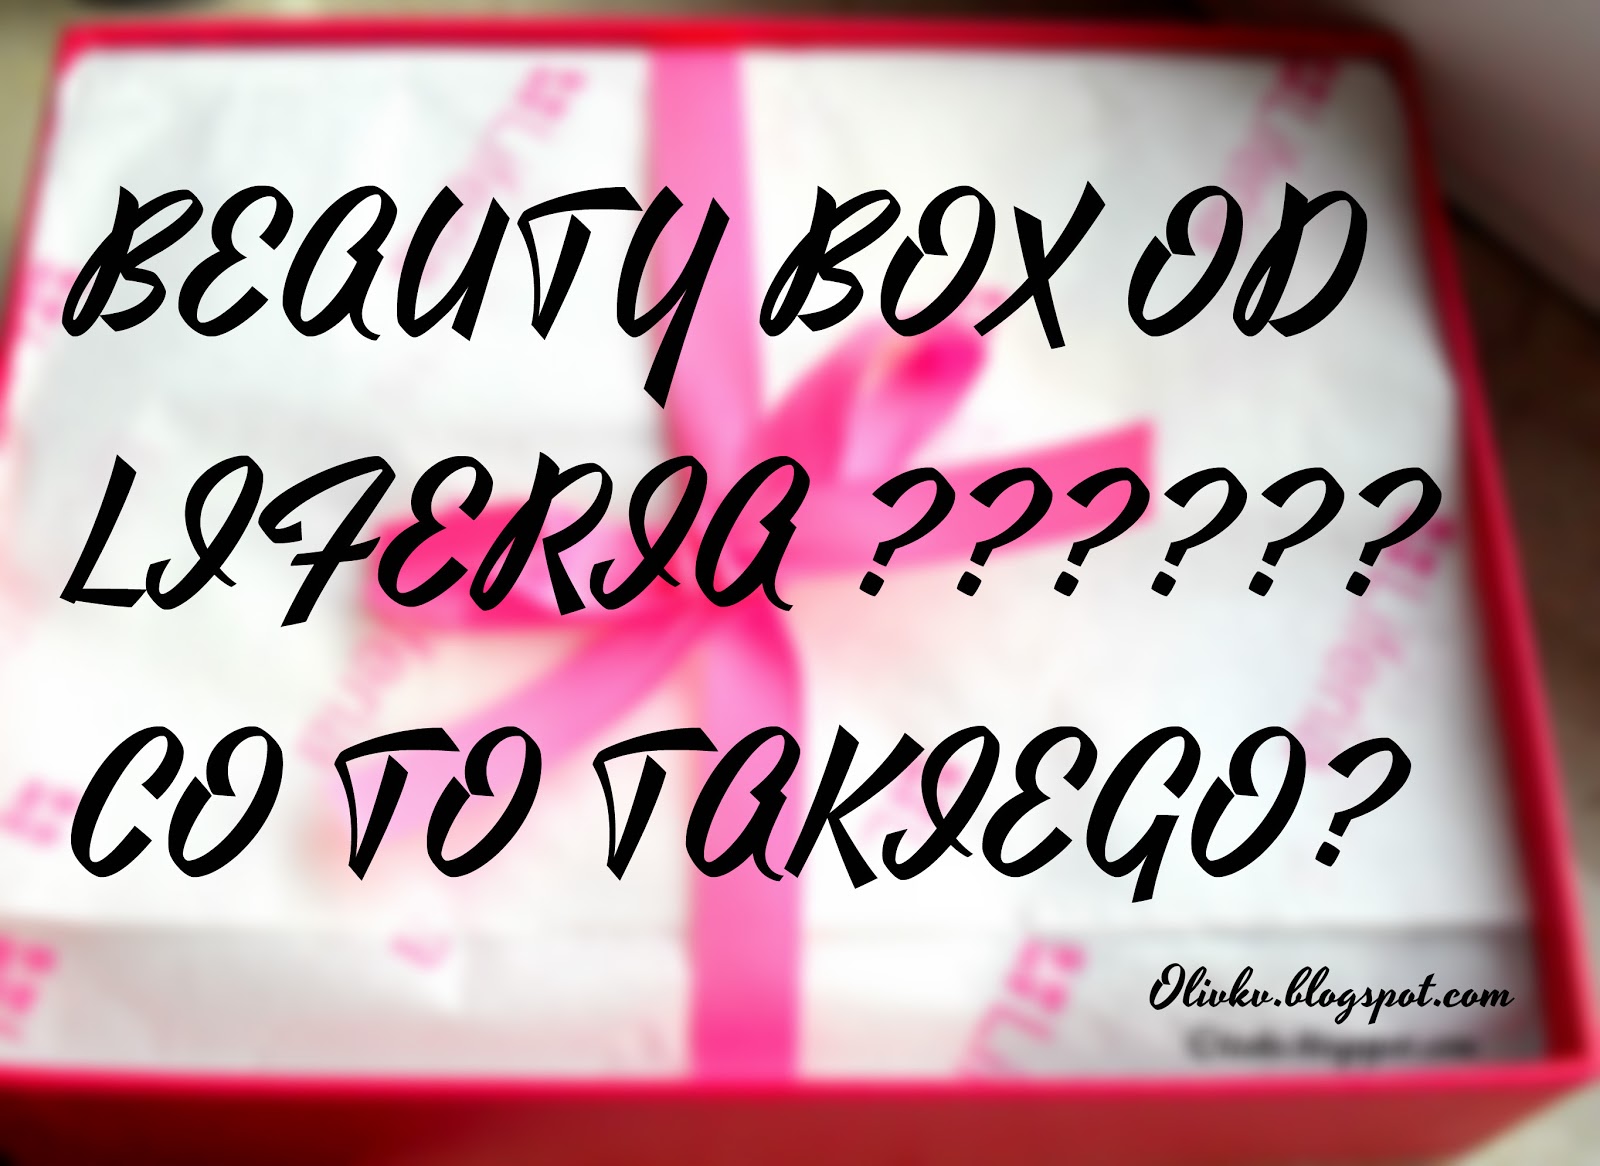 BEAUTY BOX - LIFERIA -                        - Olivkv -